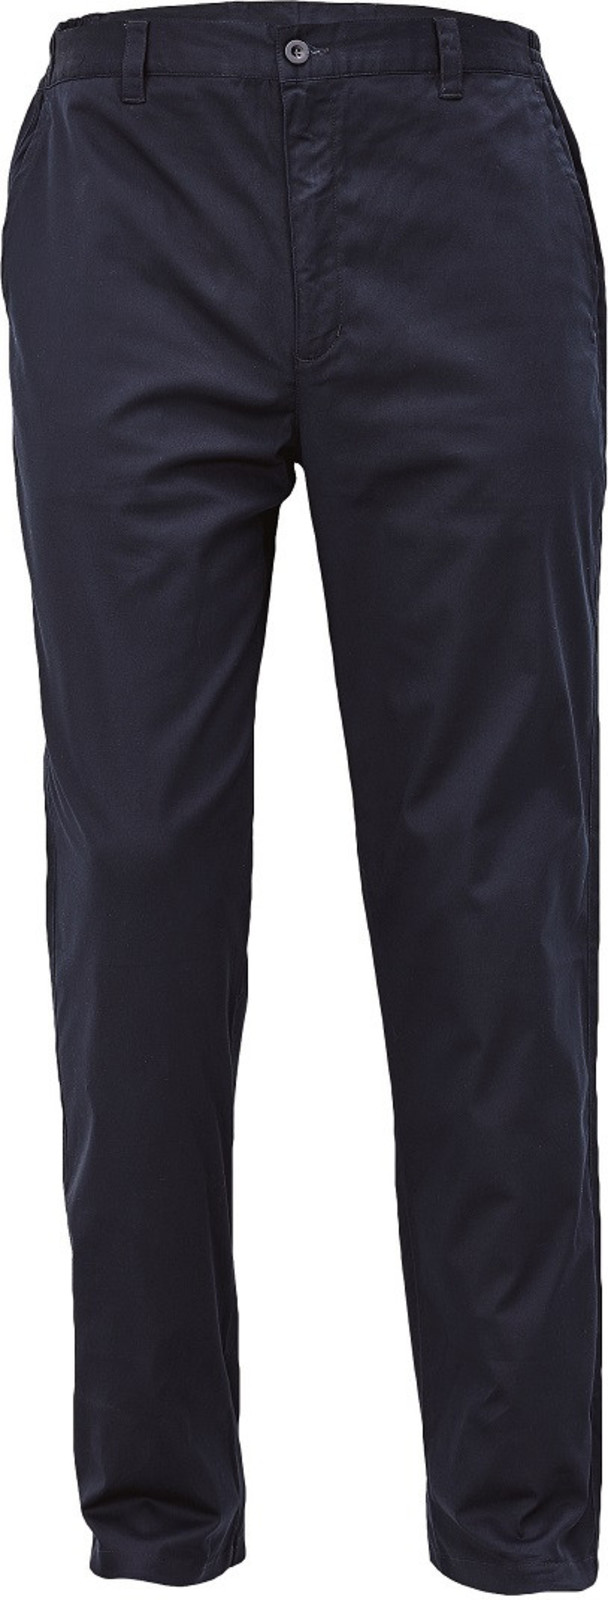 Voľnočasové nohavice Lagan pánske - veľkosť: 62, farba: navy